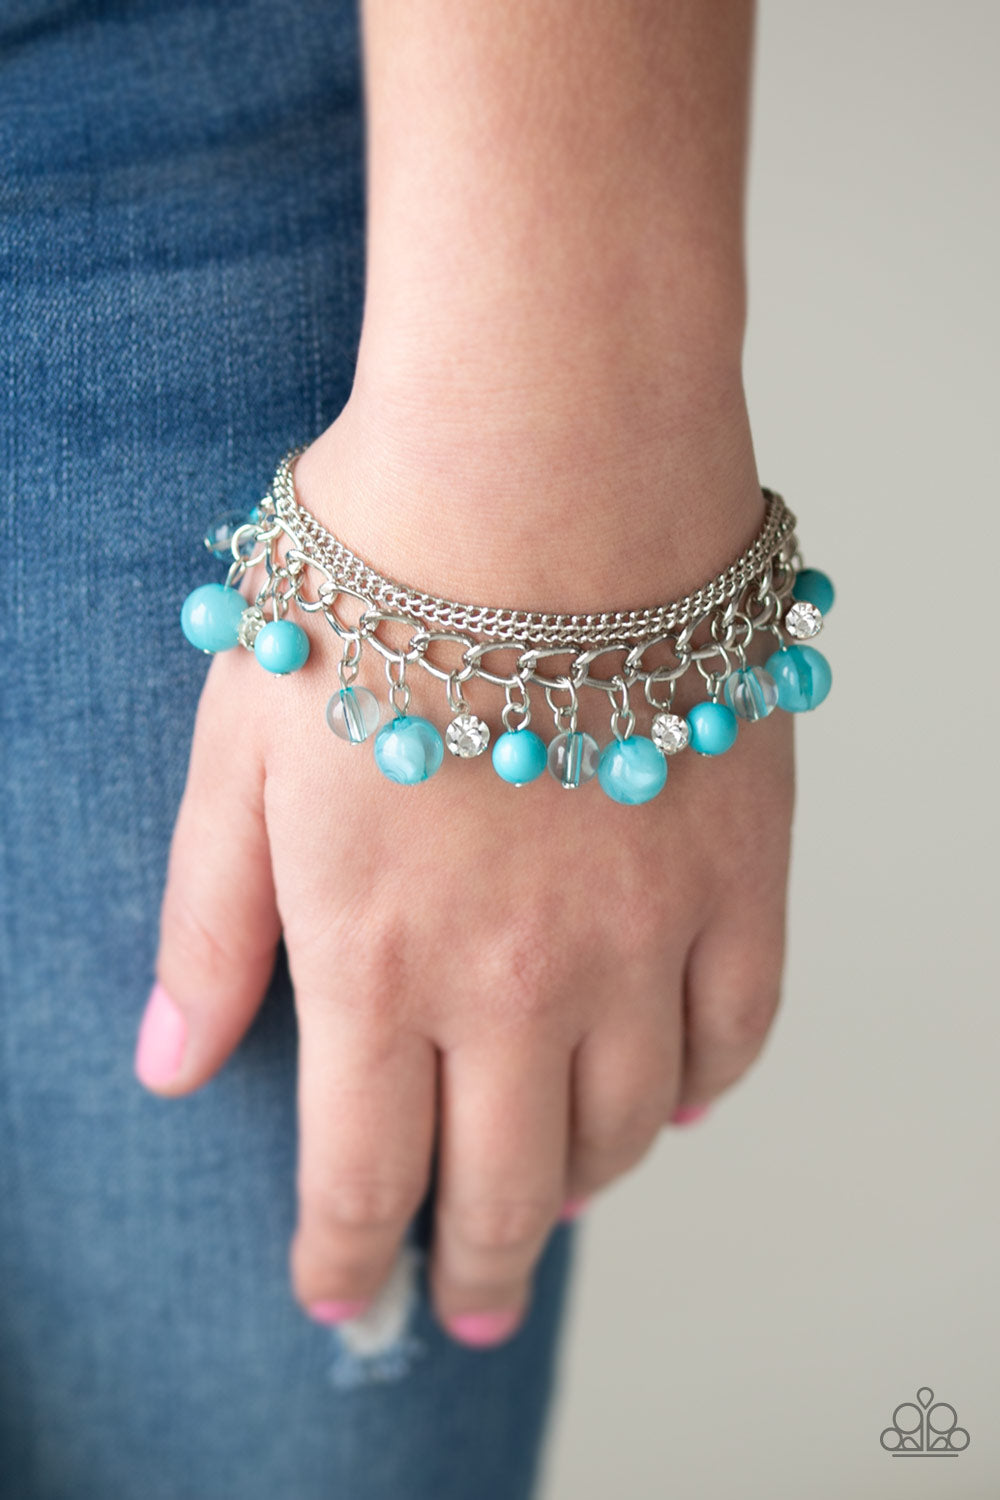 Paparazzi Let Me SEA! - Blue - Rhinestone Bracelet - $5 Jewelry With Ashley Swint